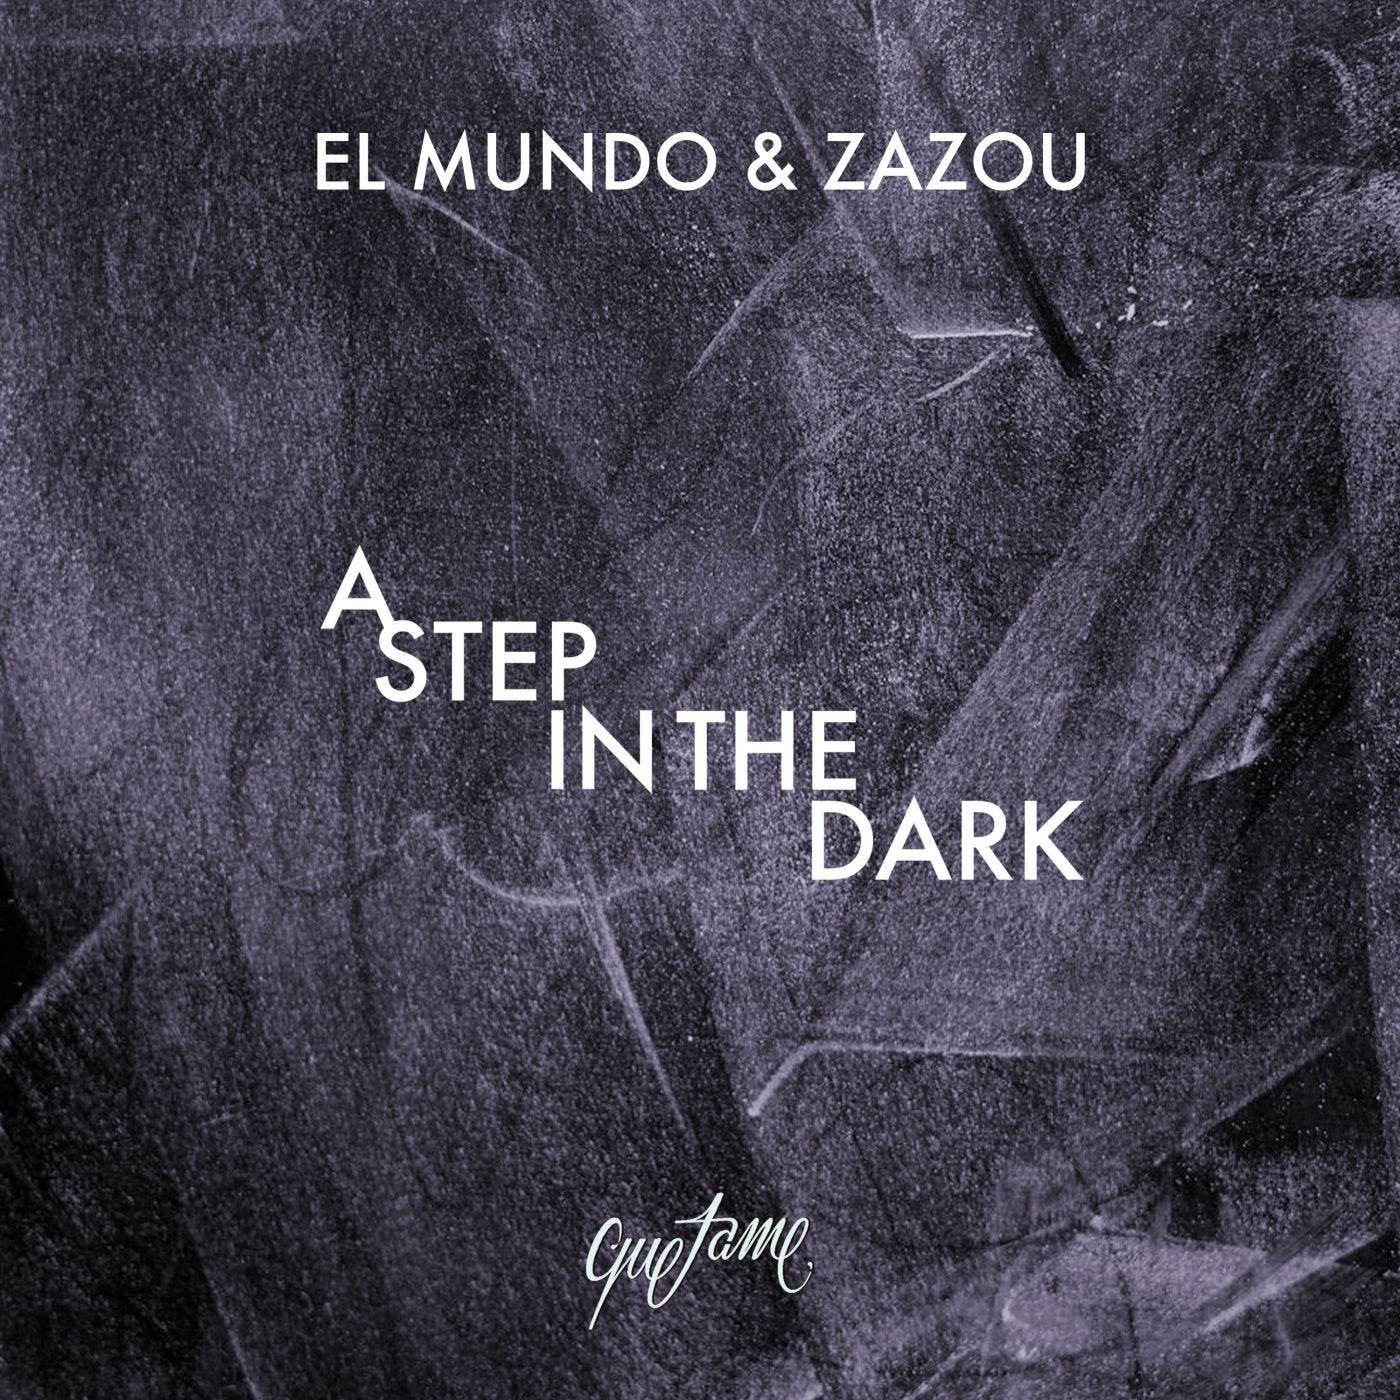 image cover: El Mundo, Zazou - A Step in the Dark on Quetame